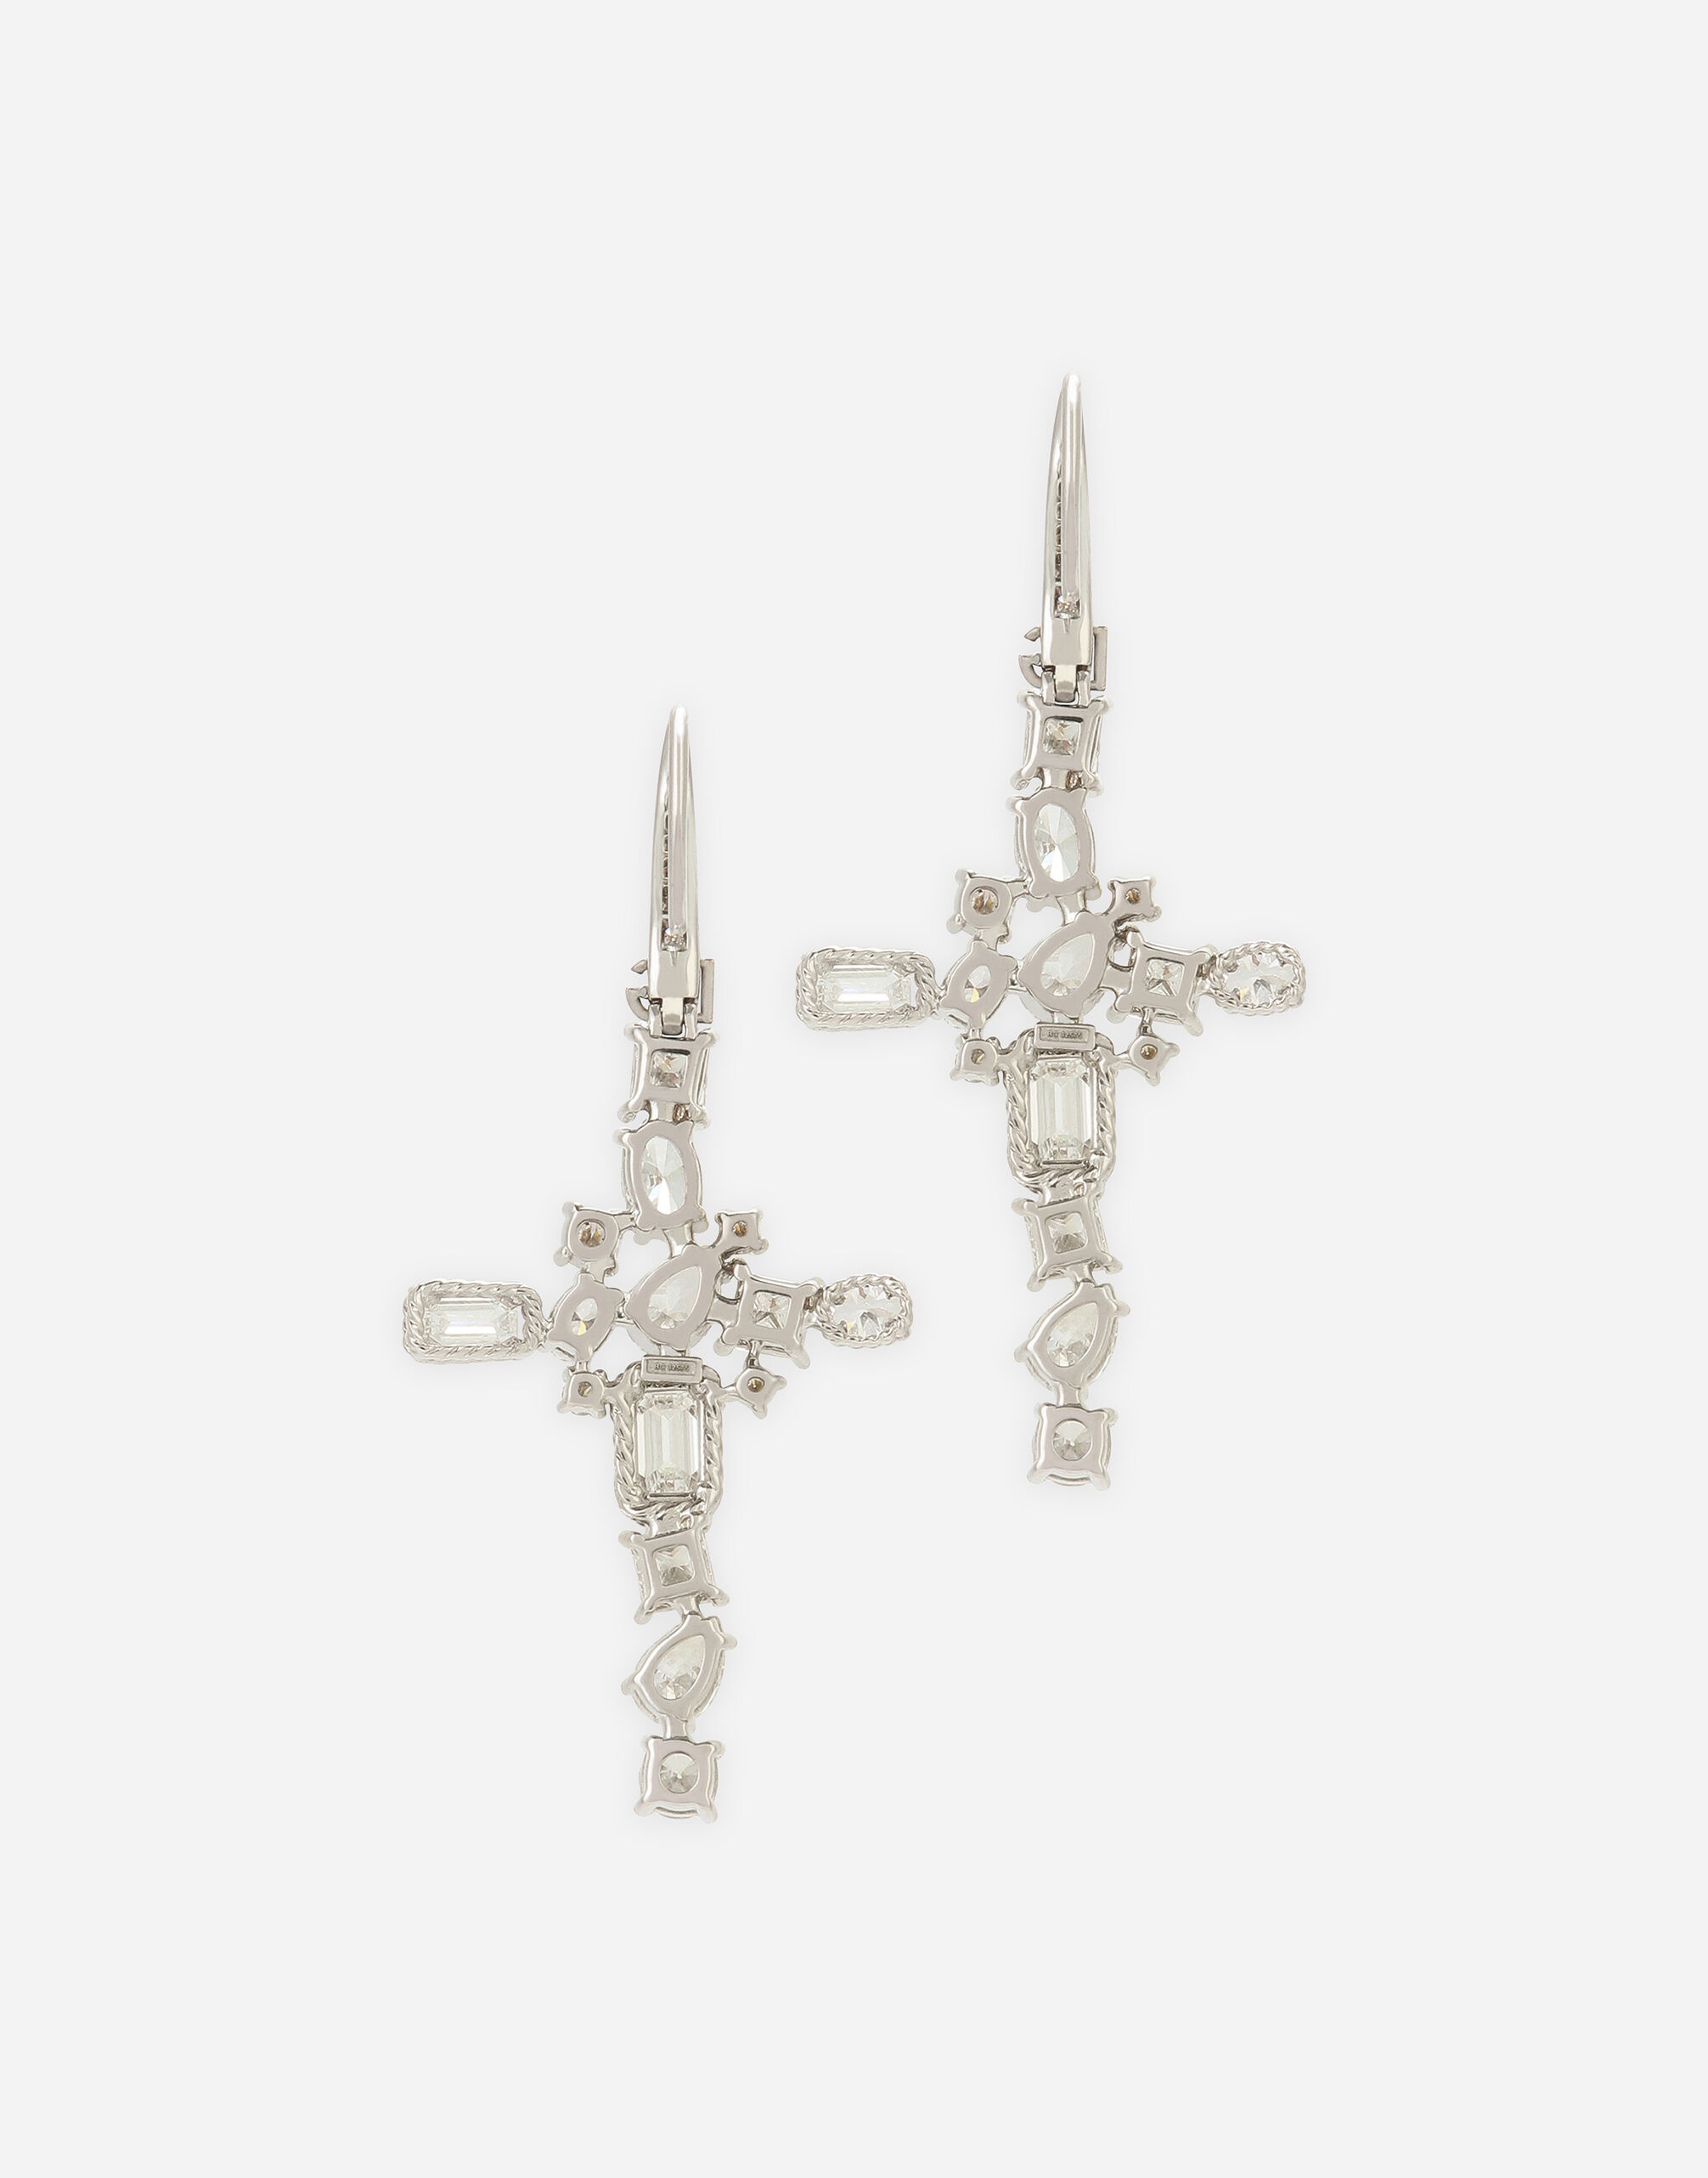 Easy Diamond earrings in white gold 18Kt diamonds - 4